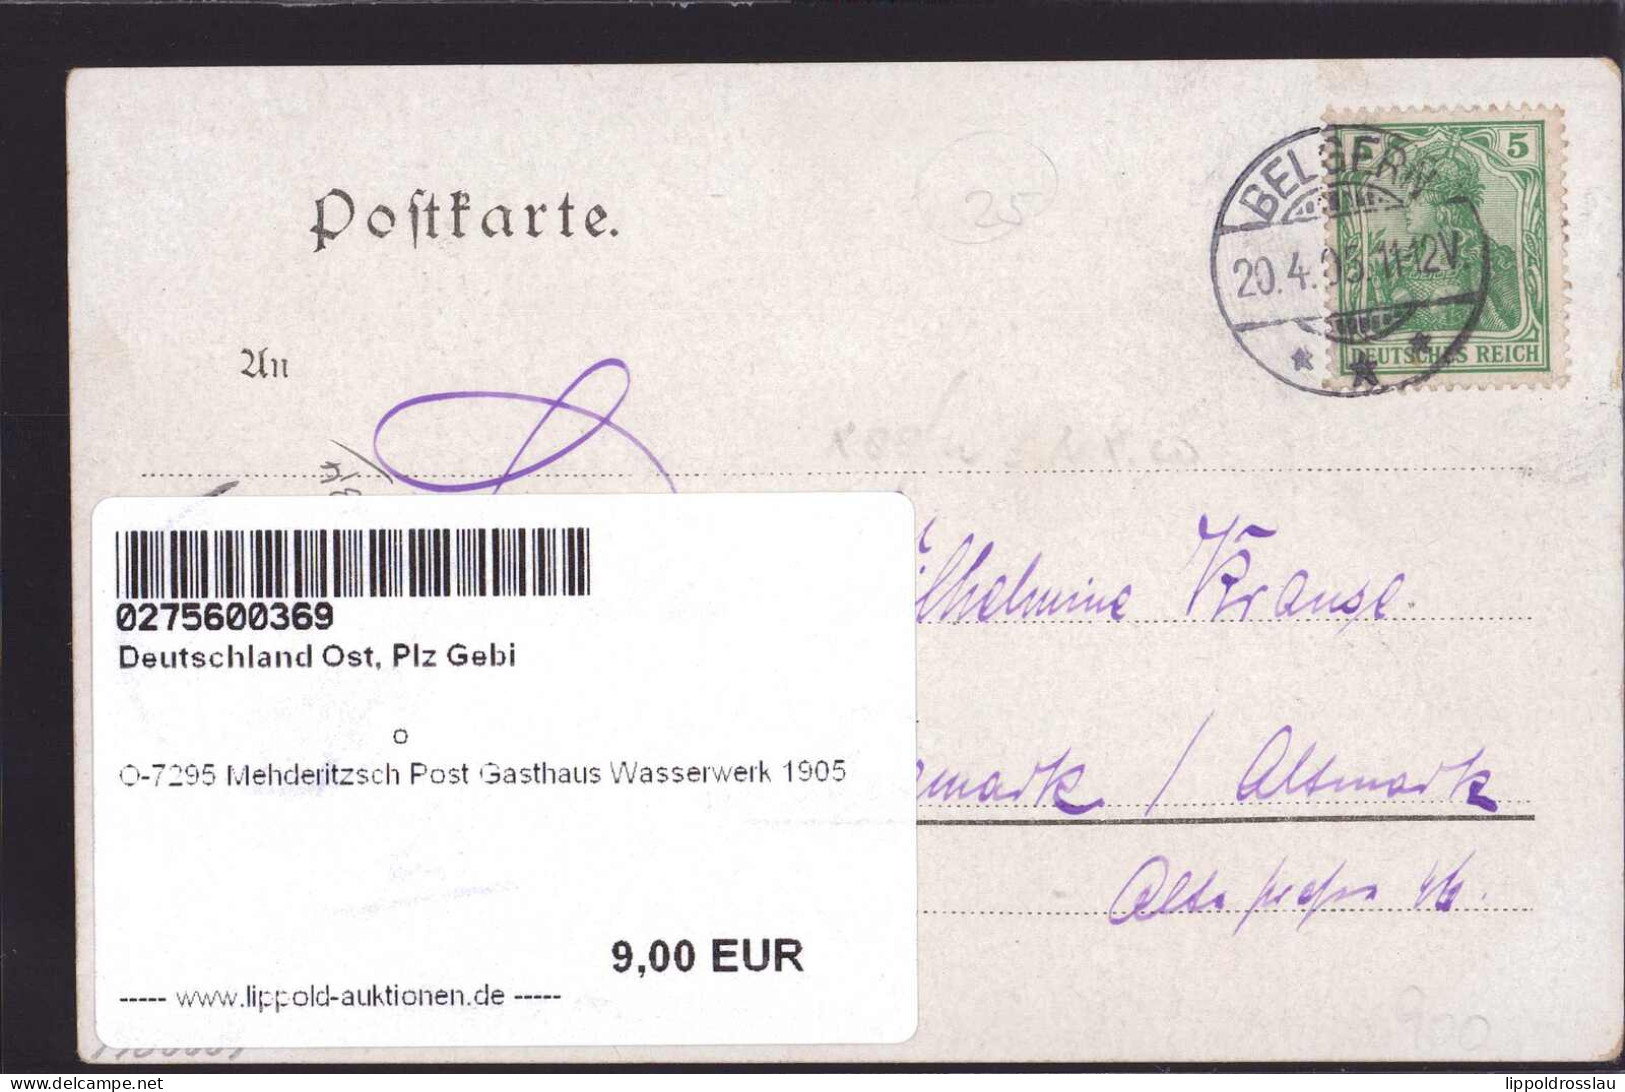 Gest. O-7295 Mehderitzsch Post Gasthaus Wasserwerk 1905 - Torgau